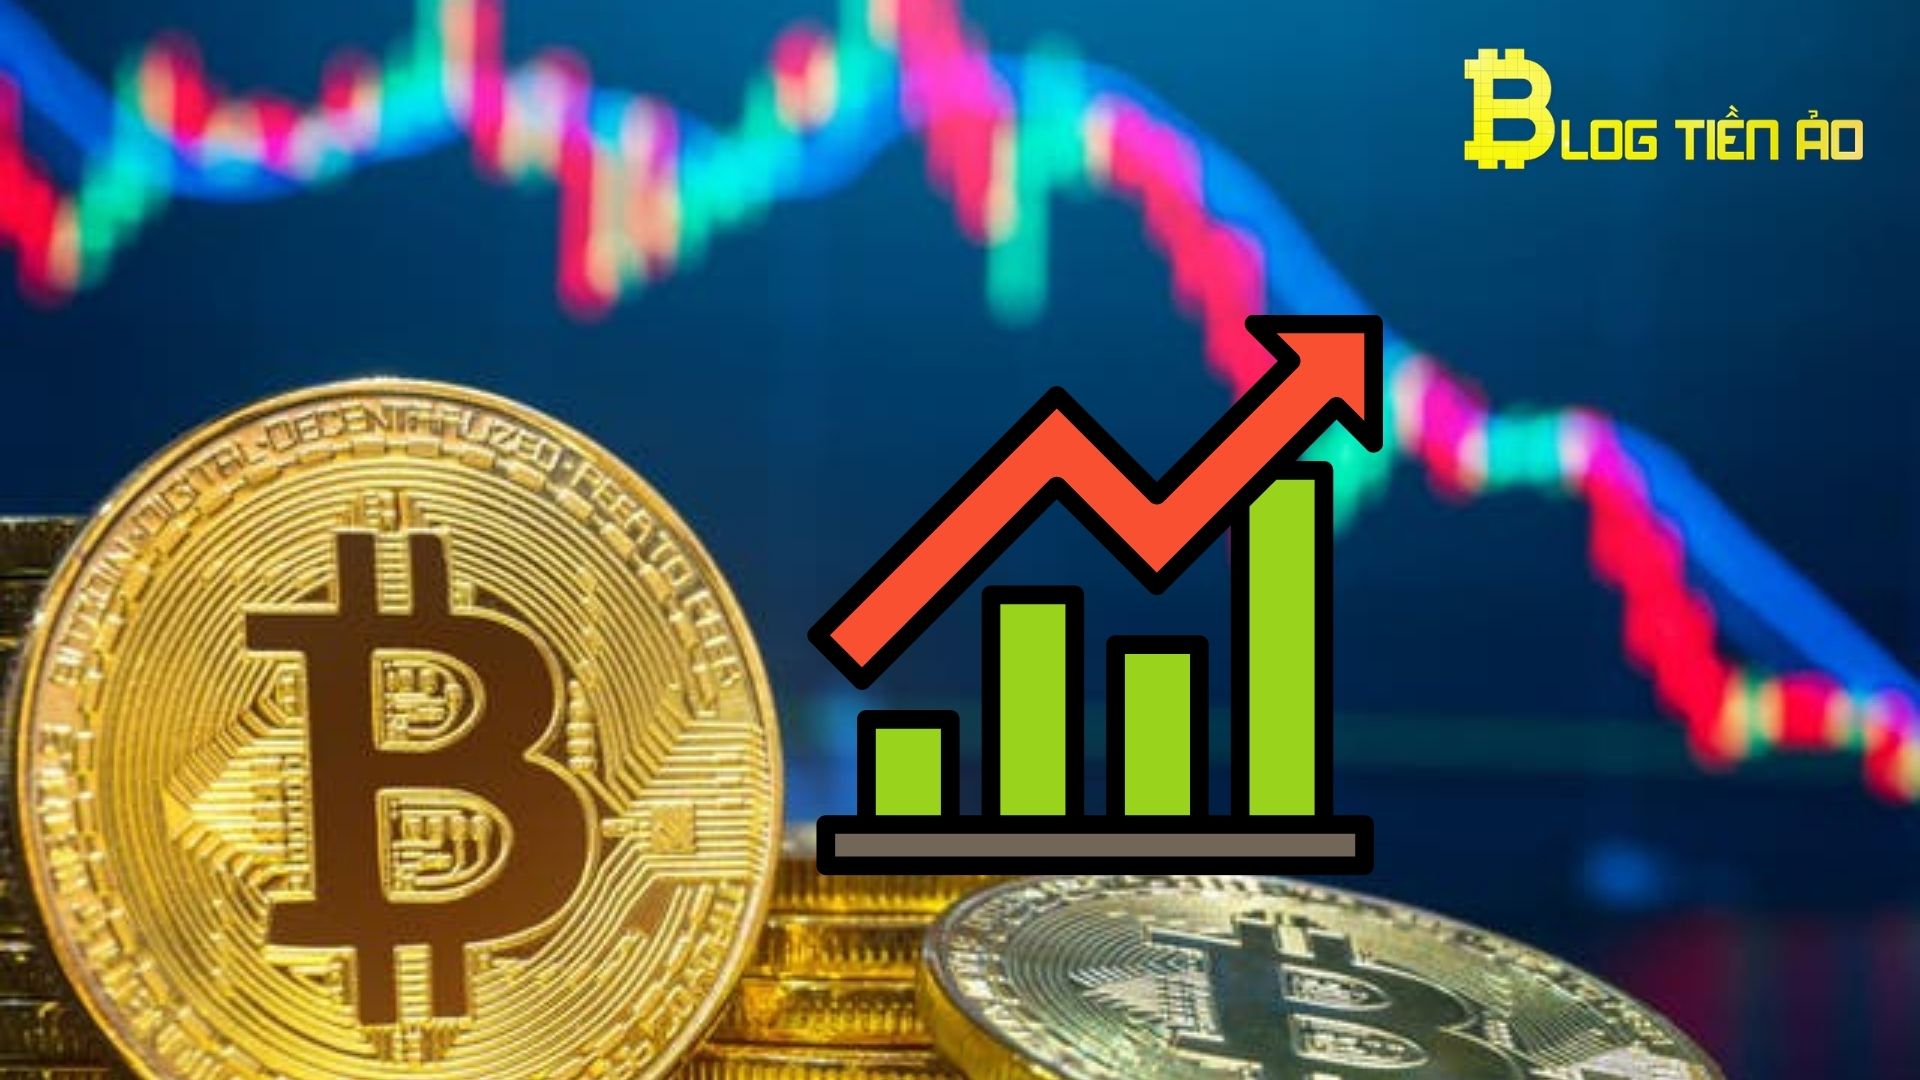 Bốn biểu đồ cho thấy tình hình Bitcoin hiện tại